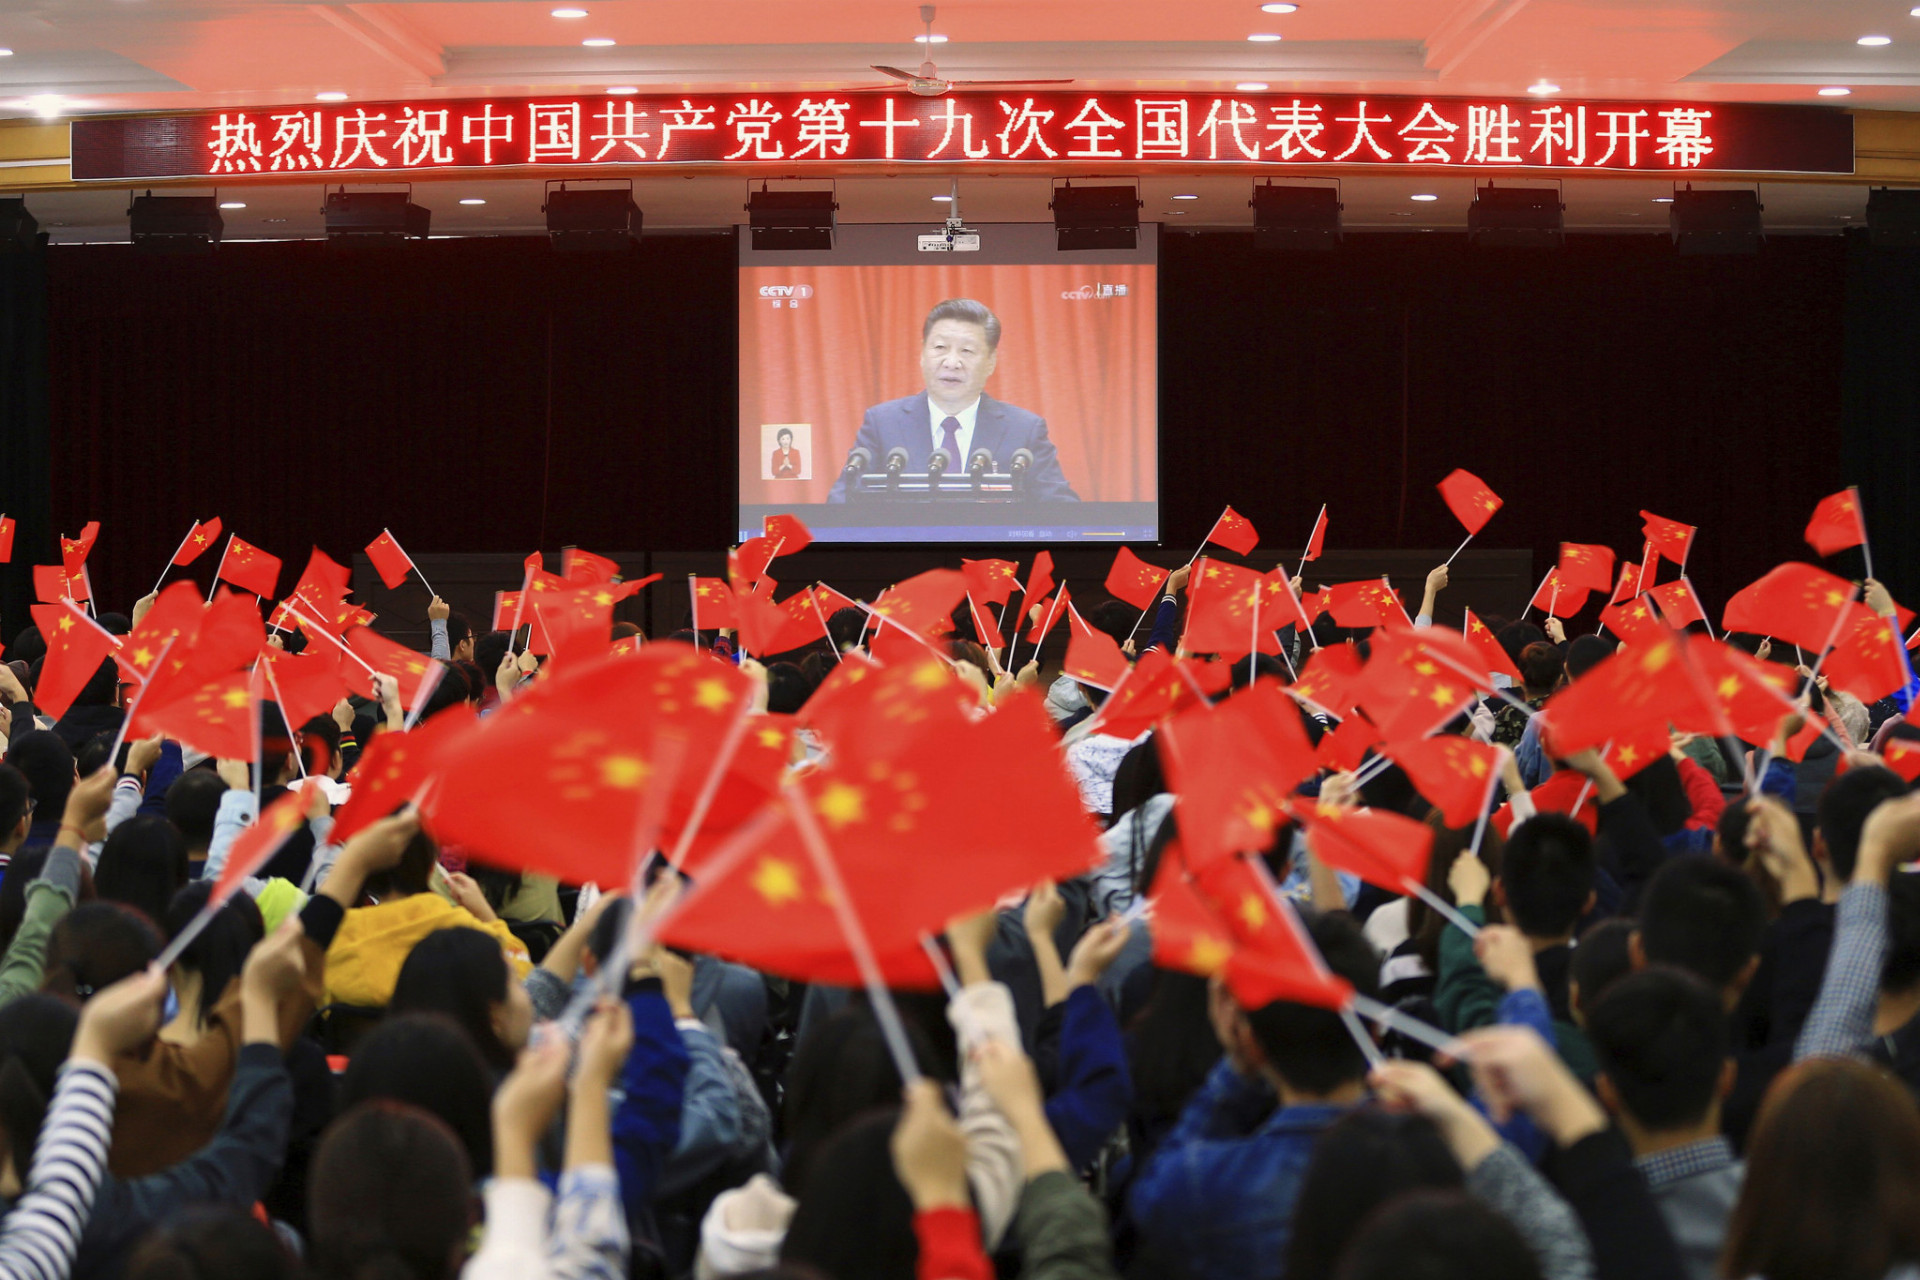 Čínski školáci z prefektúry Chuaj-pej mávali vlajkami počas televízneho prenosu vystúpenia prezidenta Si Ťin-pchinga.